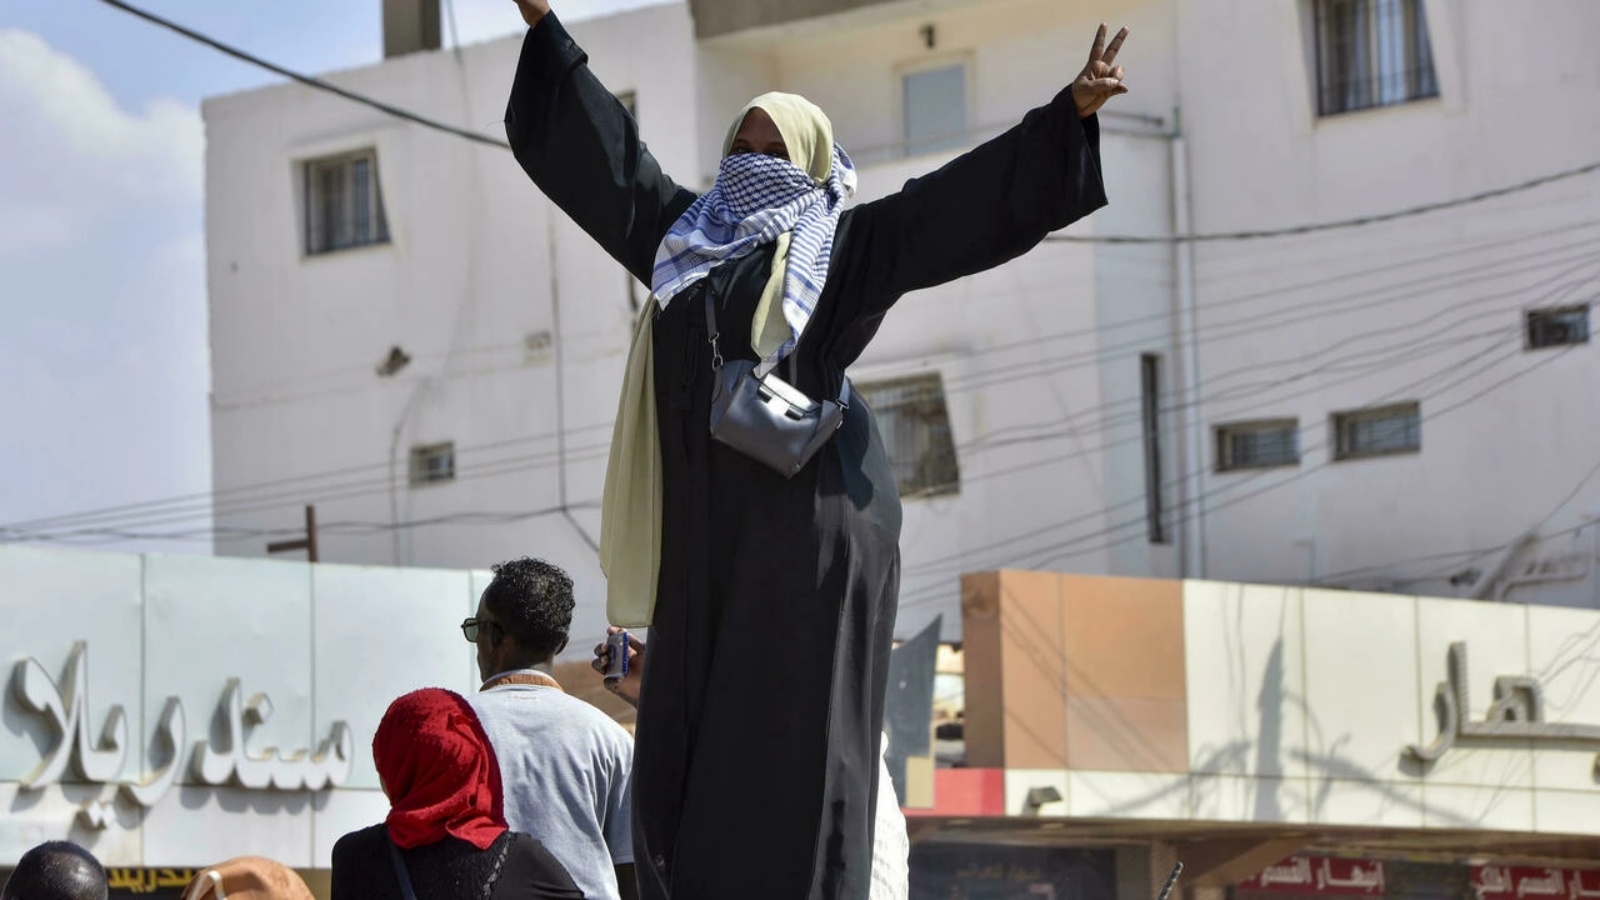 سودانية تشارك في احتجاج الخرطوم بحري للمطالبة بانتقال الحكومة إلى الحكم المدني، وهي واحدة من عشرات الآلاف الذين خرجوا إلى الشوارع في الأيام الأخيرة.